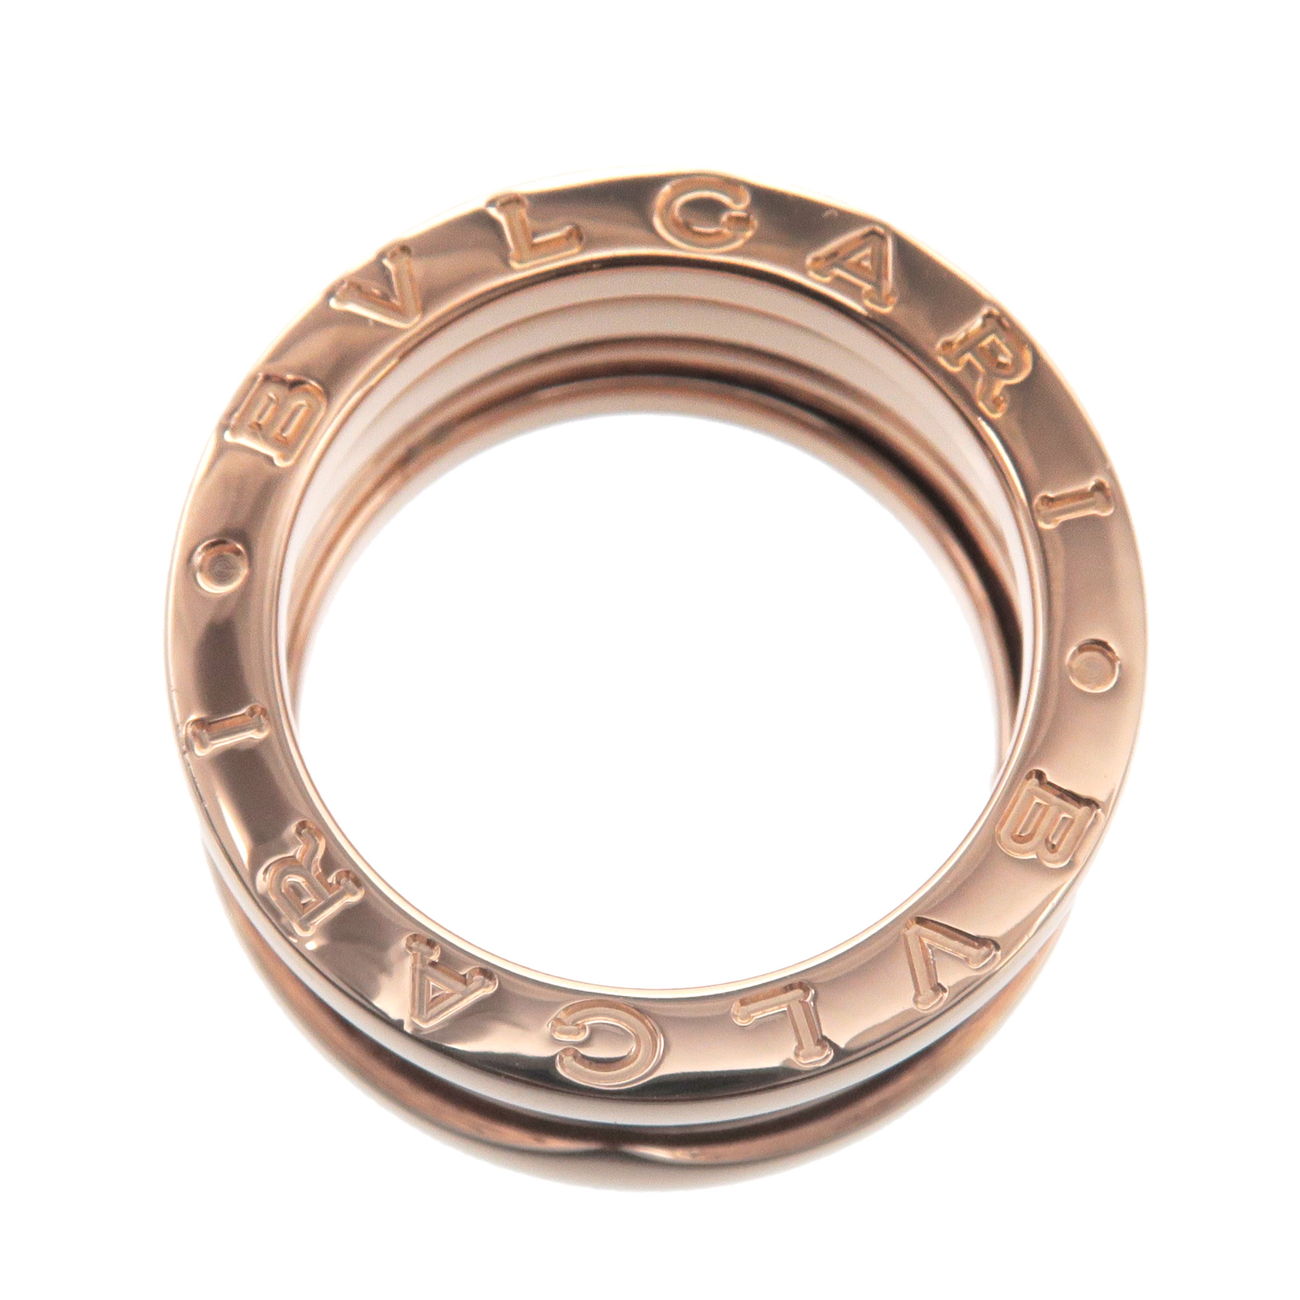 BVLGARI B-zero1 Ring 3 Band K18 750 Rose Gold #48 US4.5 EU48